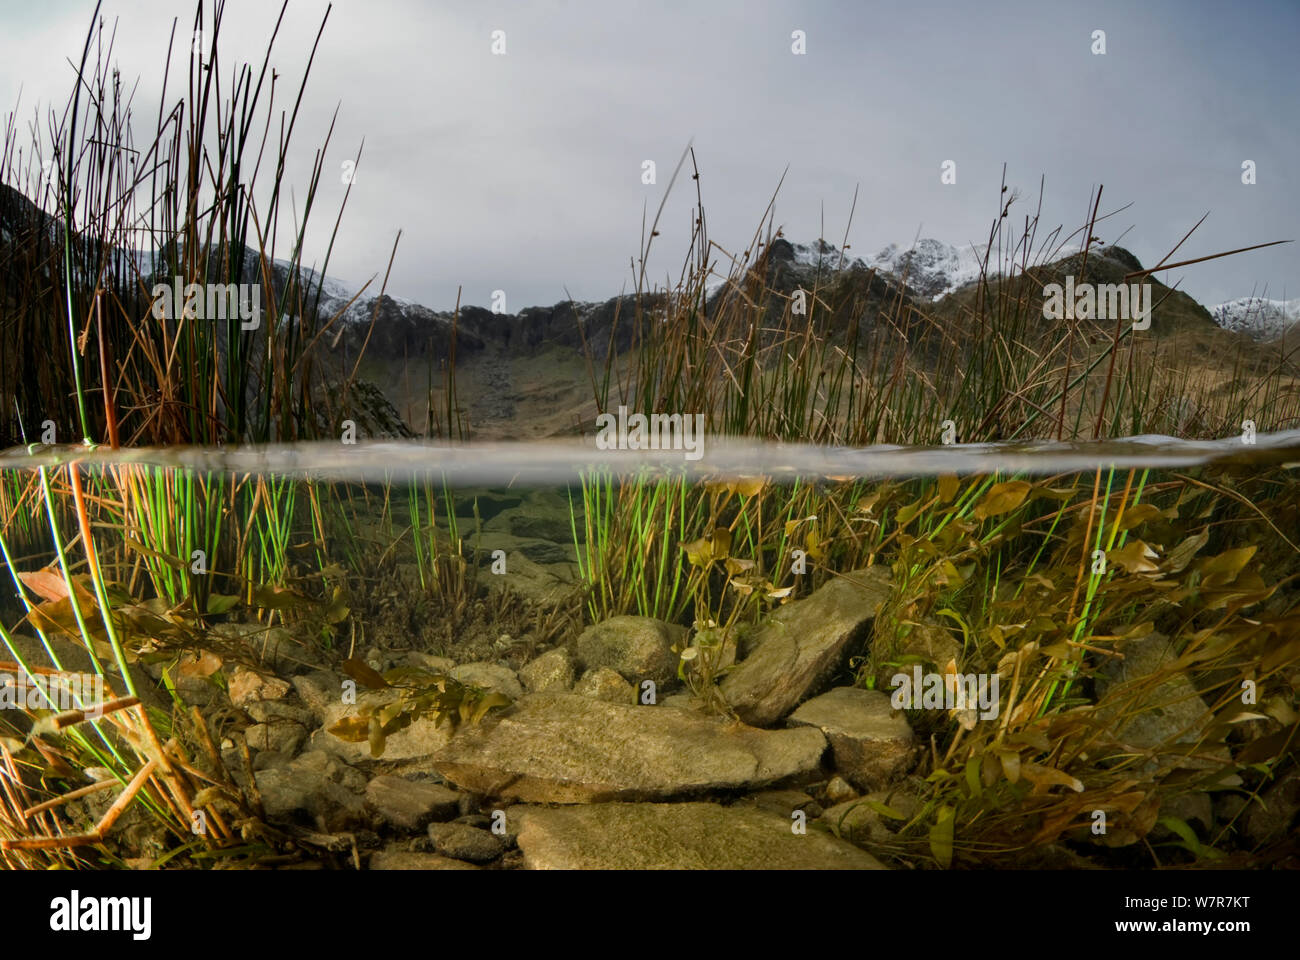 Un livello diviso immagine dell'habitat in un lago di montagna, che mostra delle erbe e delle alghe, Llyn Idwal, Snowdonia, Galles, Dicembre 2009 Foto Stock